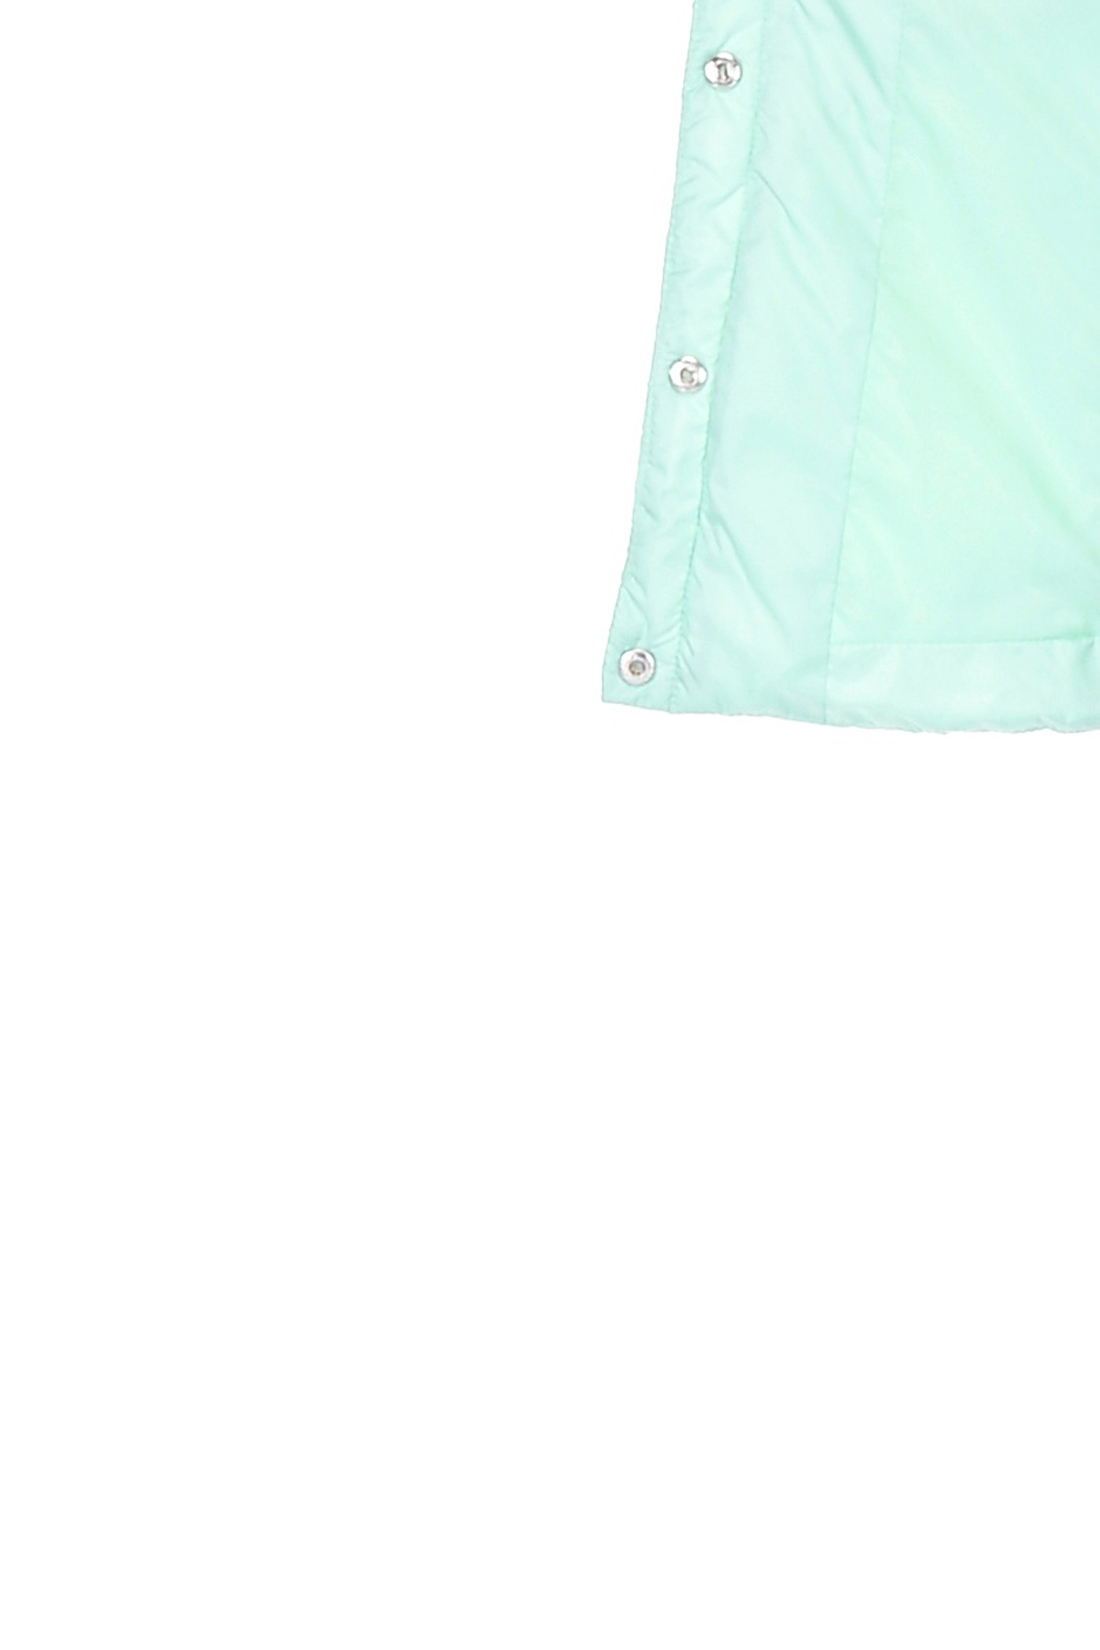 Базовая куртка на кнопках (арт. baon B038203), размер XS, цвет зеленый Базовая куртка на кнопках (арт. baon B038203) - фото 4